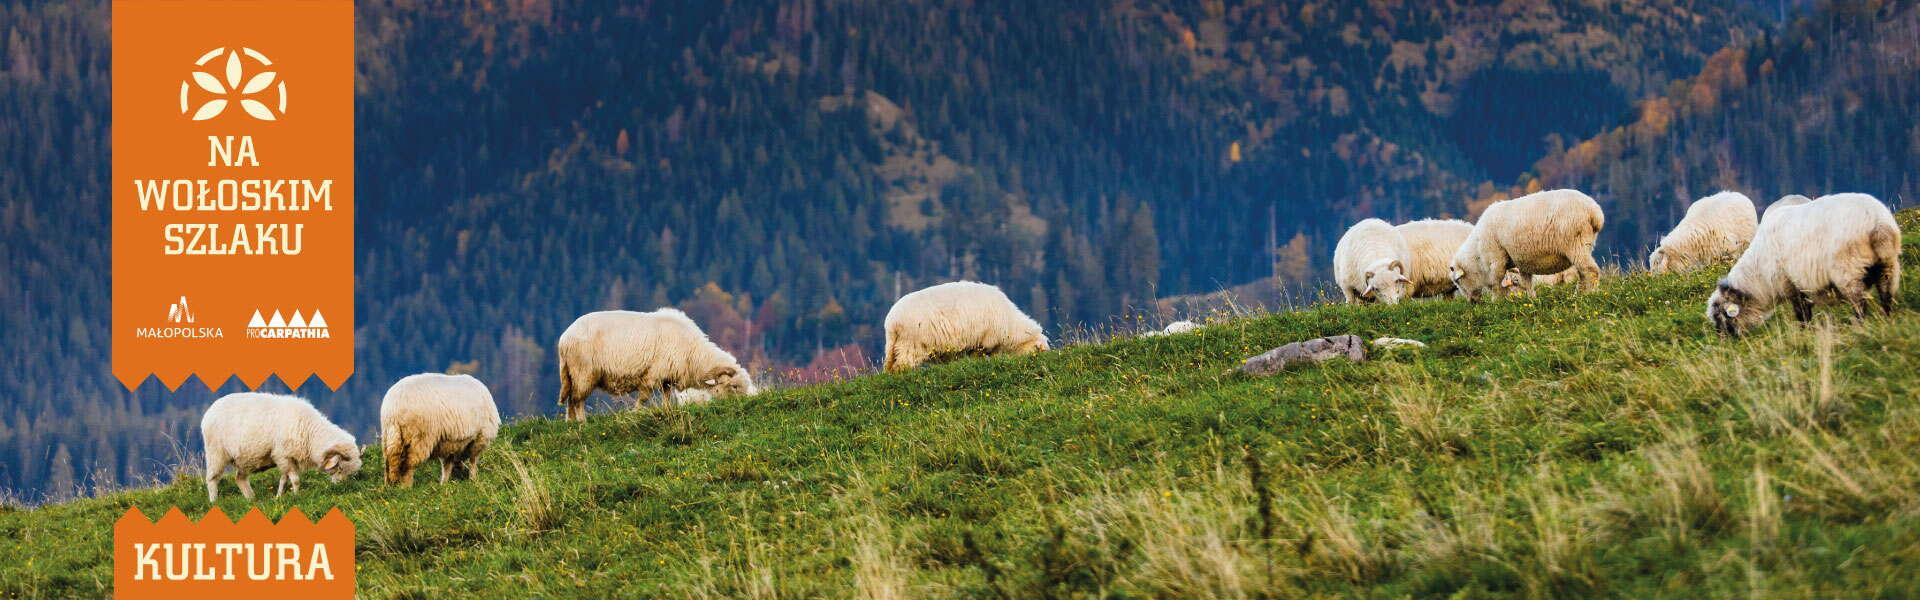 Wzgórze na którym wypasają się owce. W tle widok na góry.